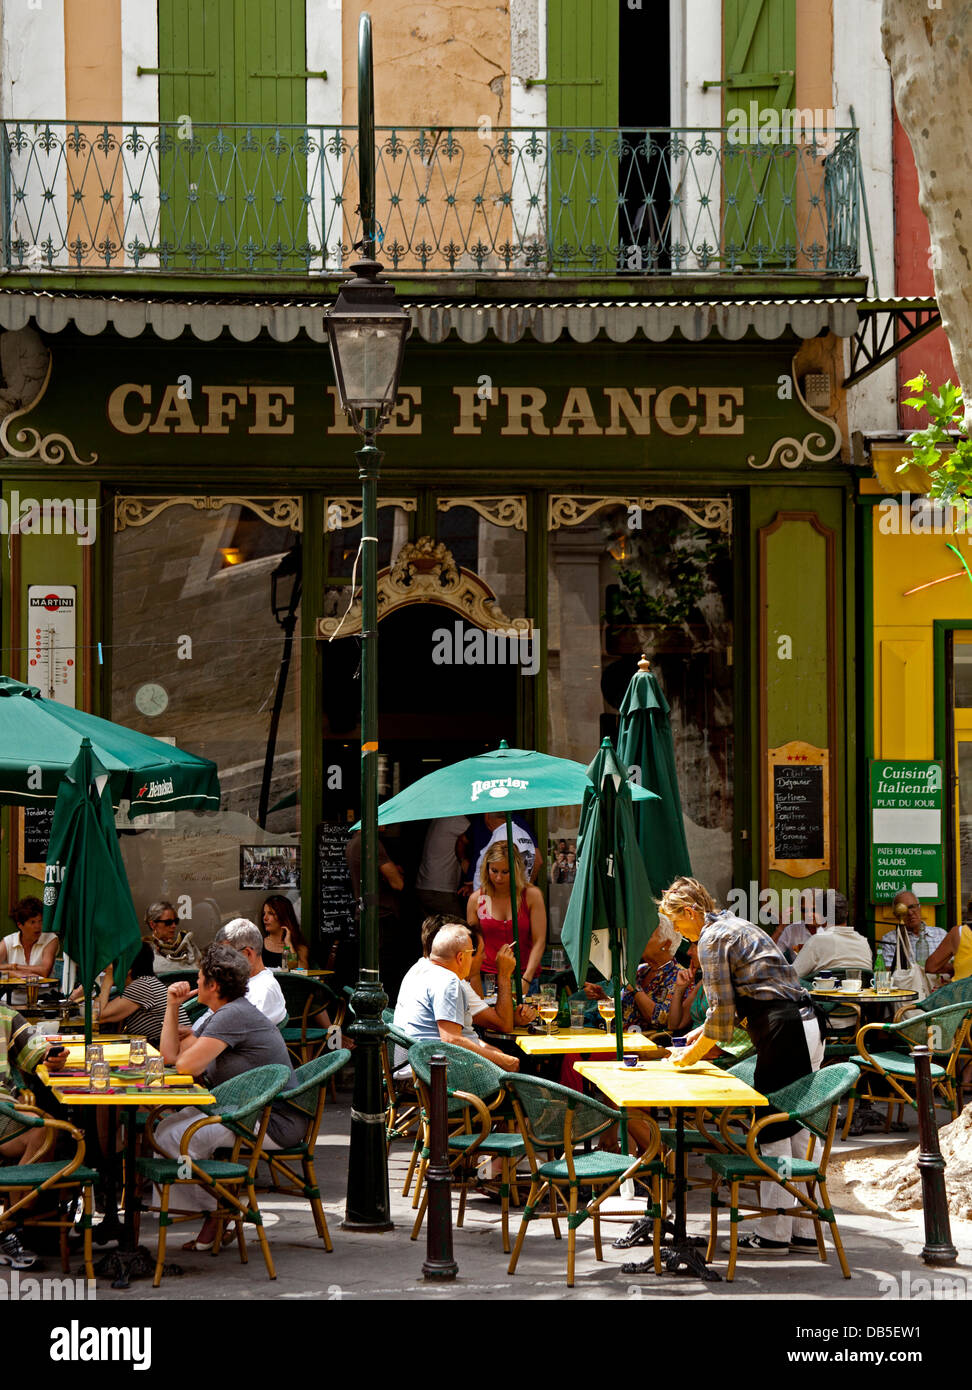 L'Isle sur la Sorgue Cafe de France, Provence, Luberon, Europe Banque D'Images